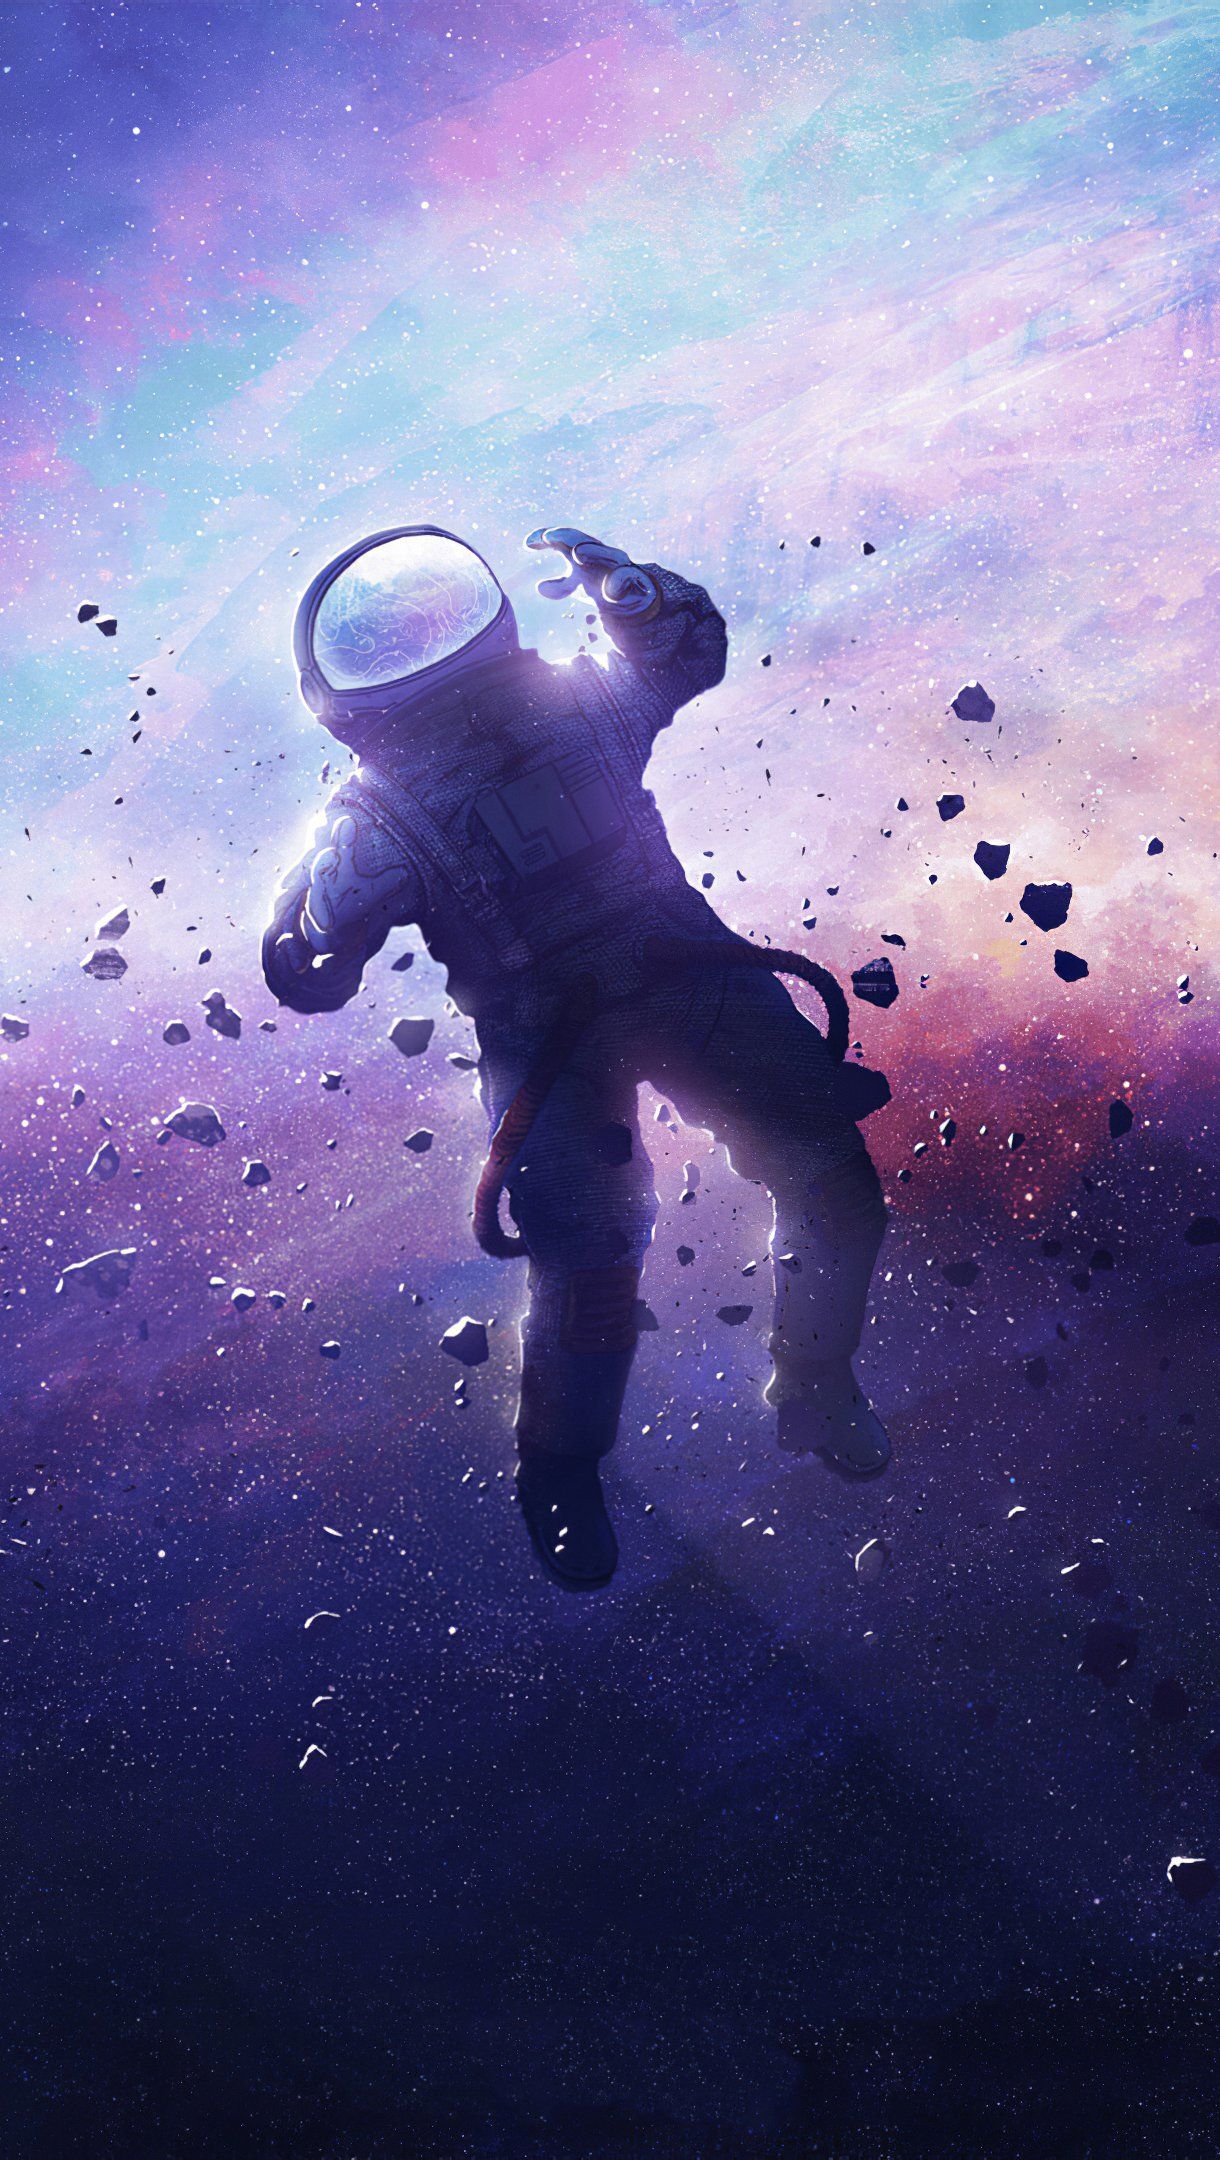 Astronaut lost in space Wallpaper 4k Ultra HD